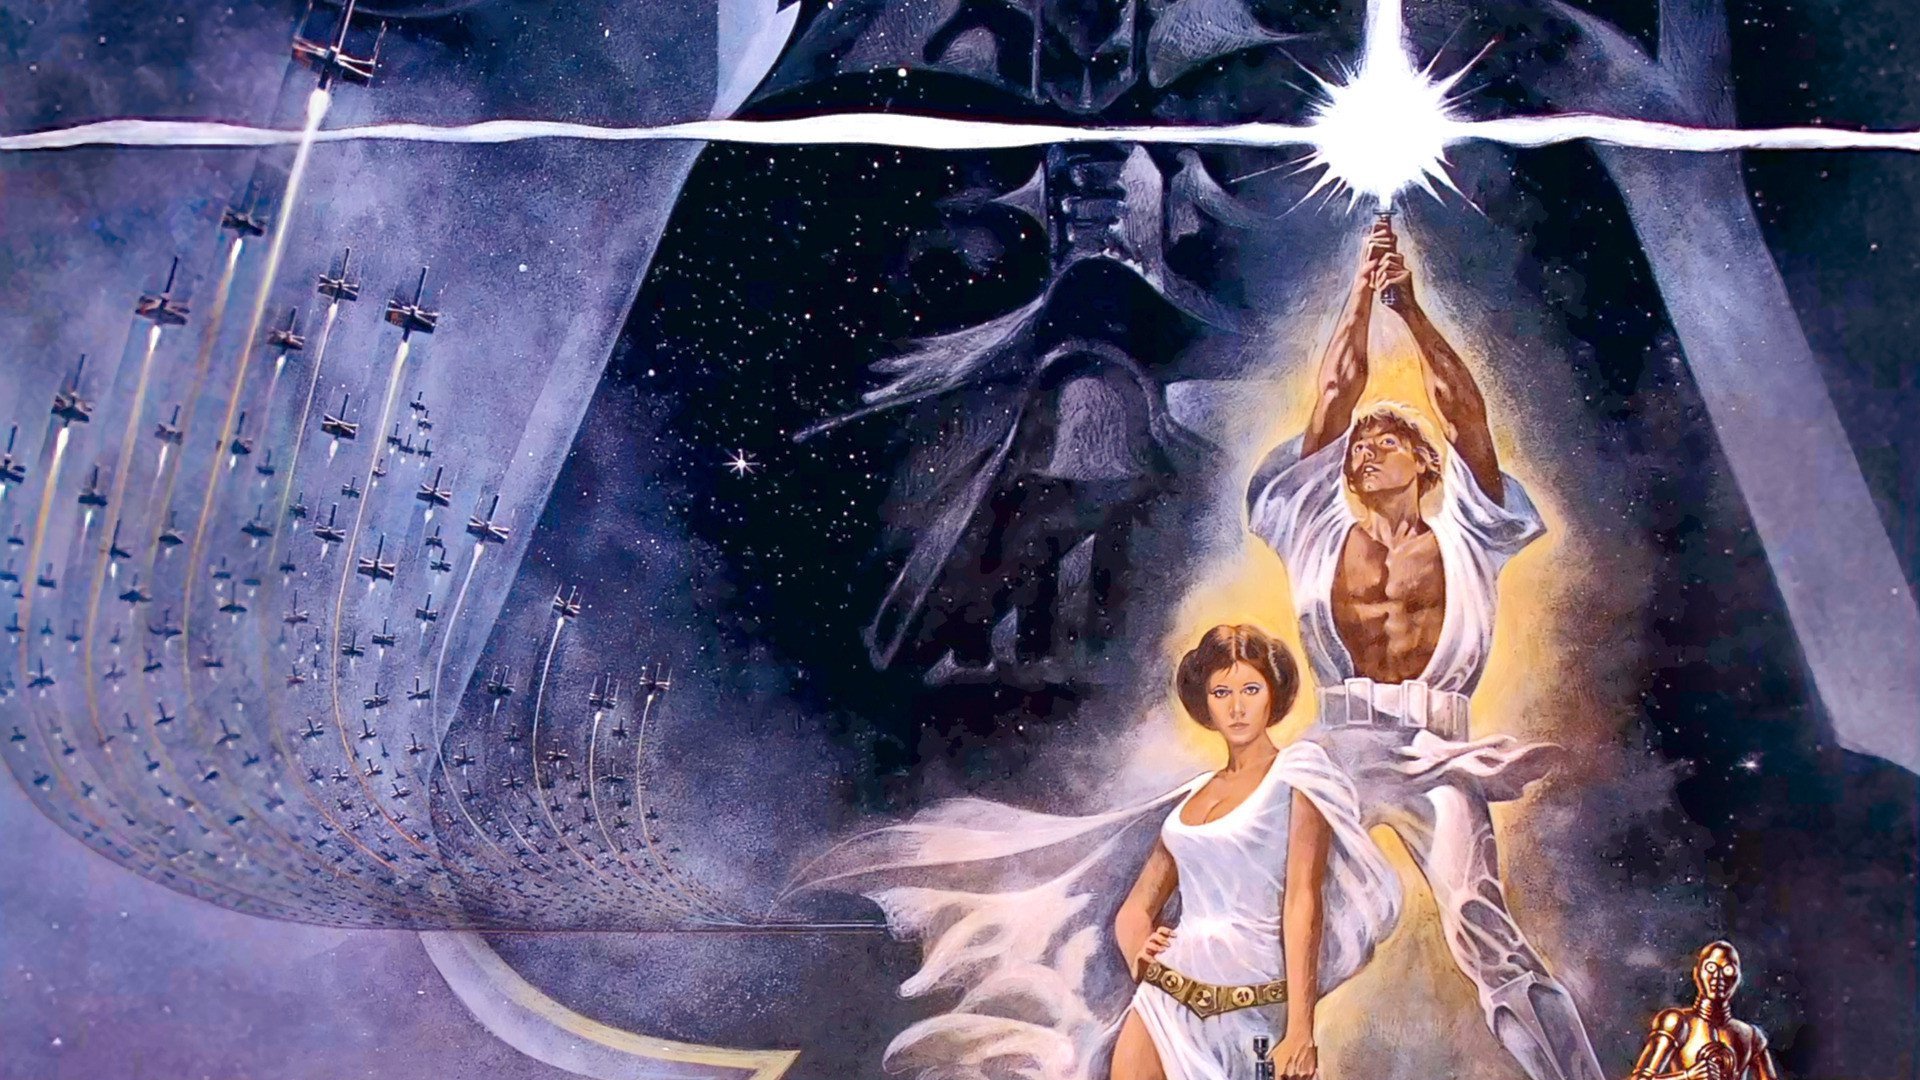 ვარსკვლავური ომები: ეპიზოდი 4 / Star Wars: Episode IV - A New Hope ქართულად